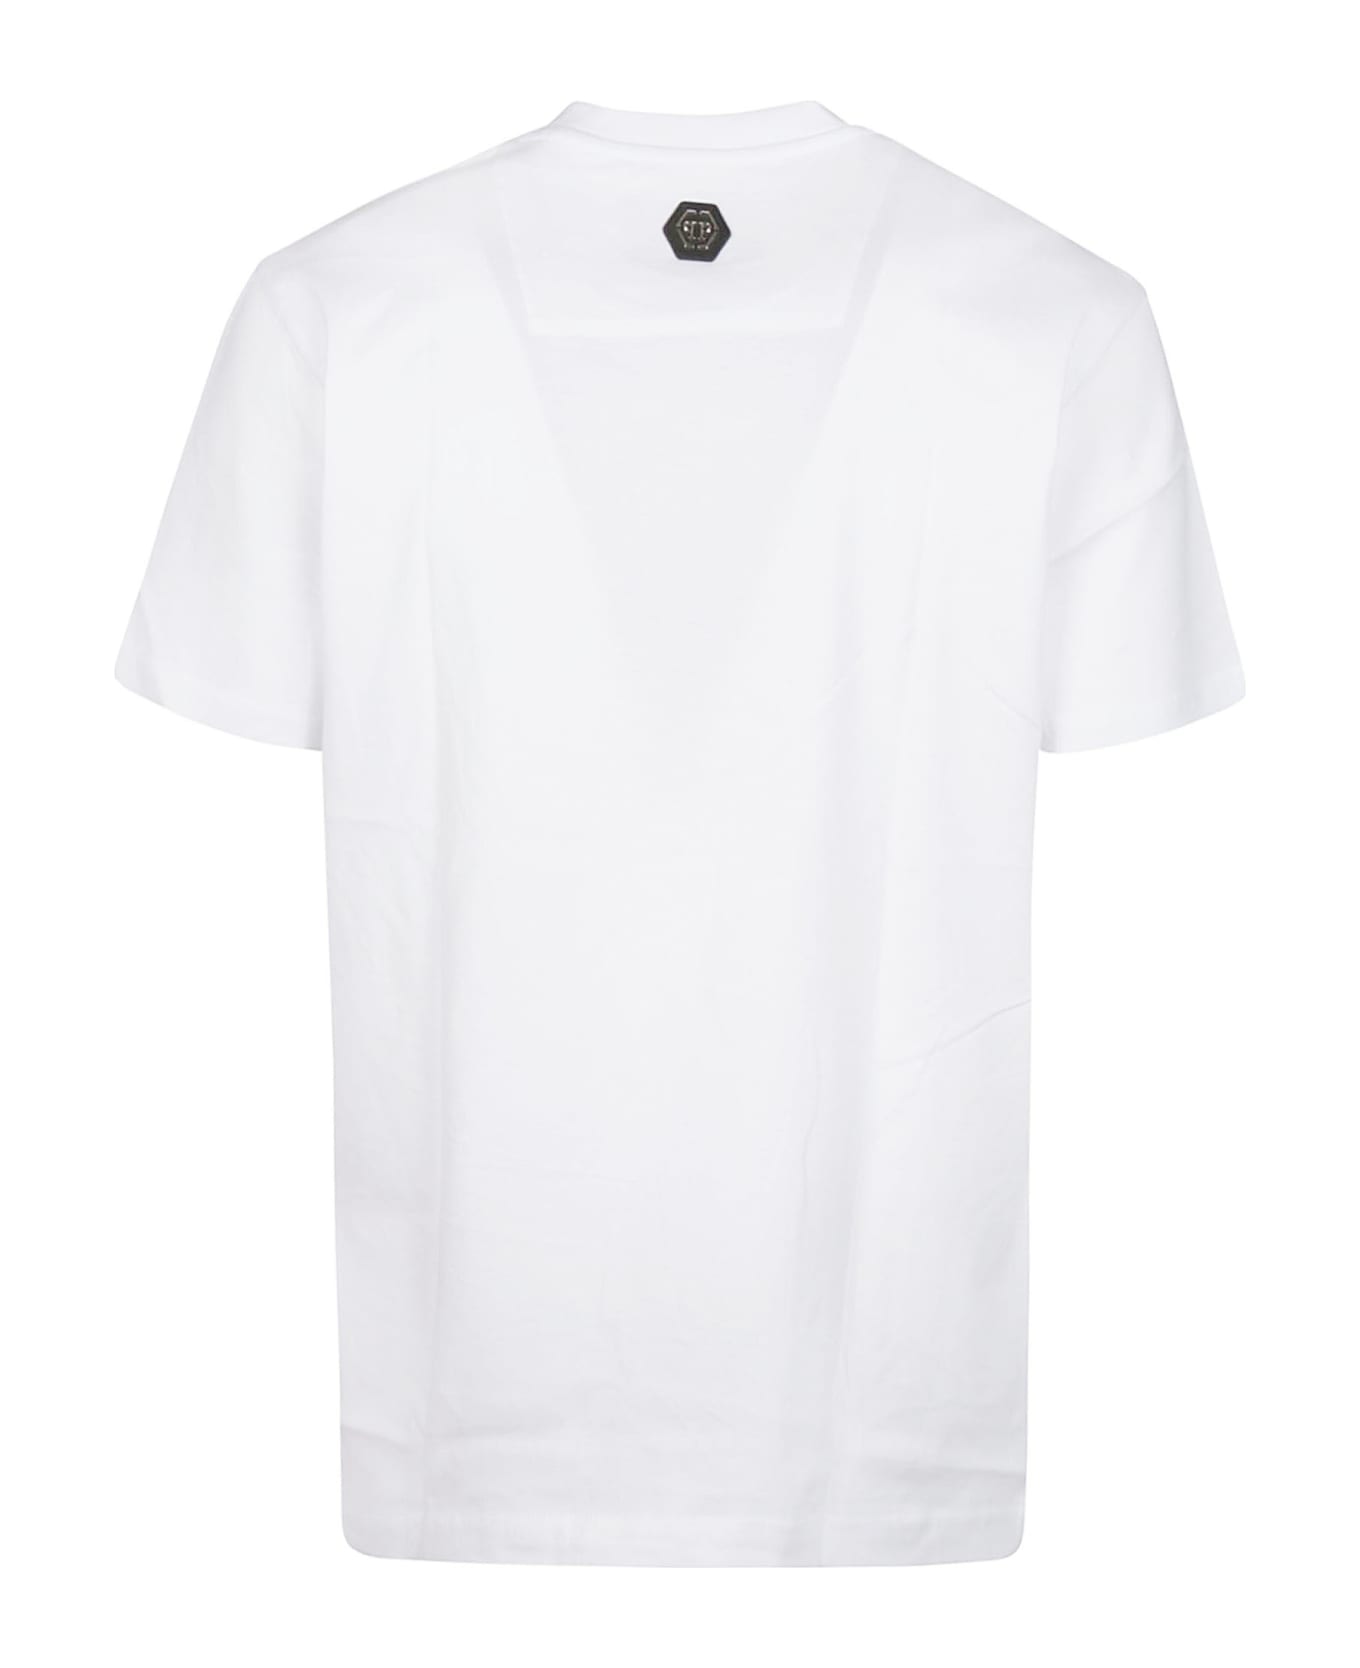 Philipp Plein T-shirt - White シャツ